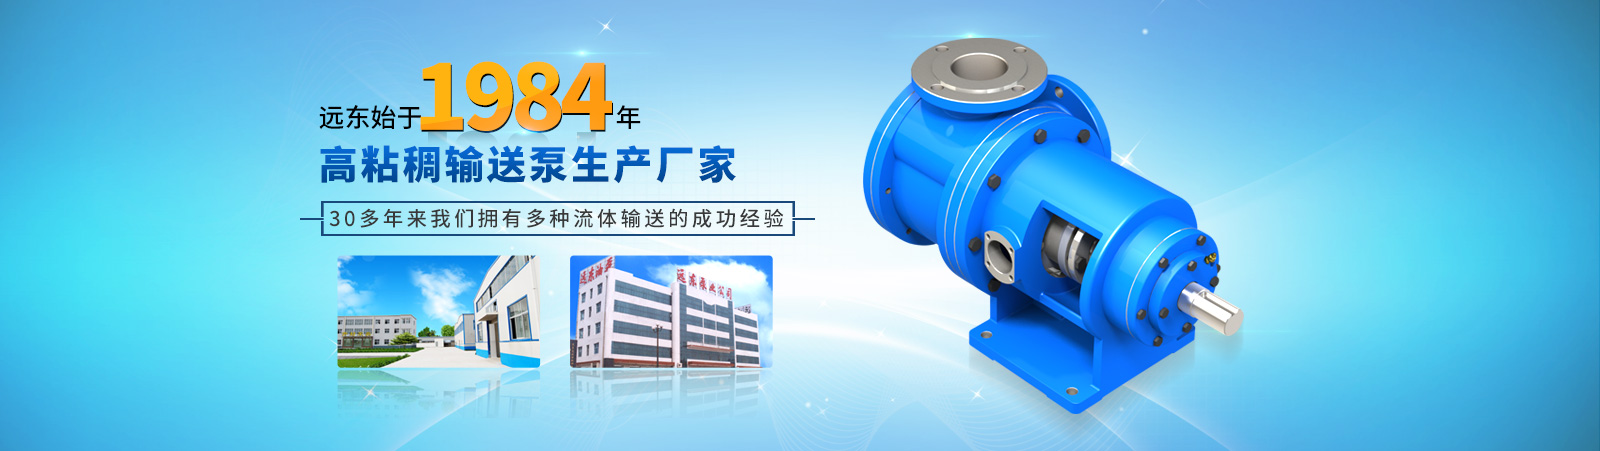 远东泵业——国内高粘稠流体输送泵设计制造者